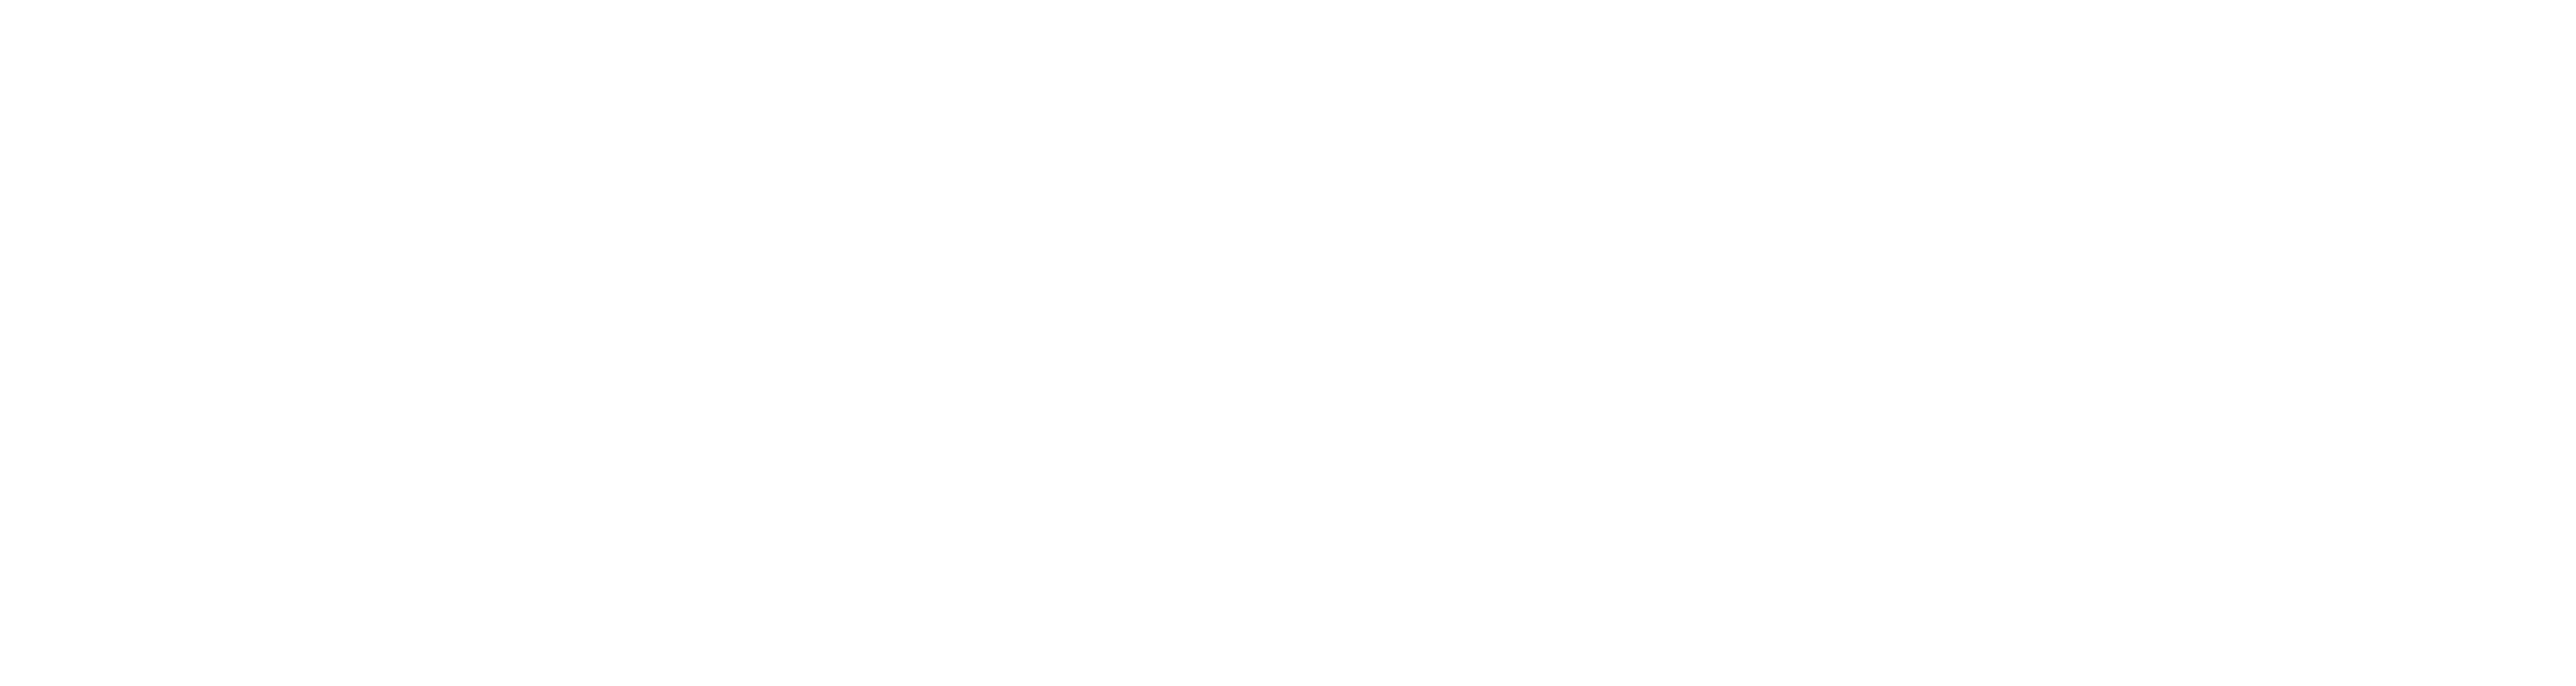 MarcoPolo_Proposed Logo-white